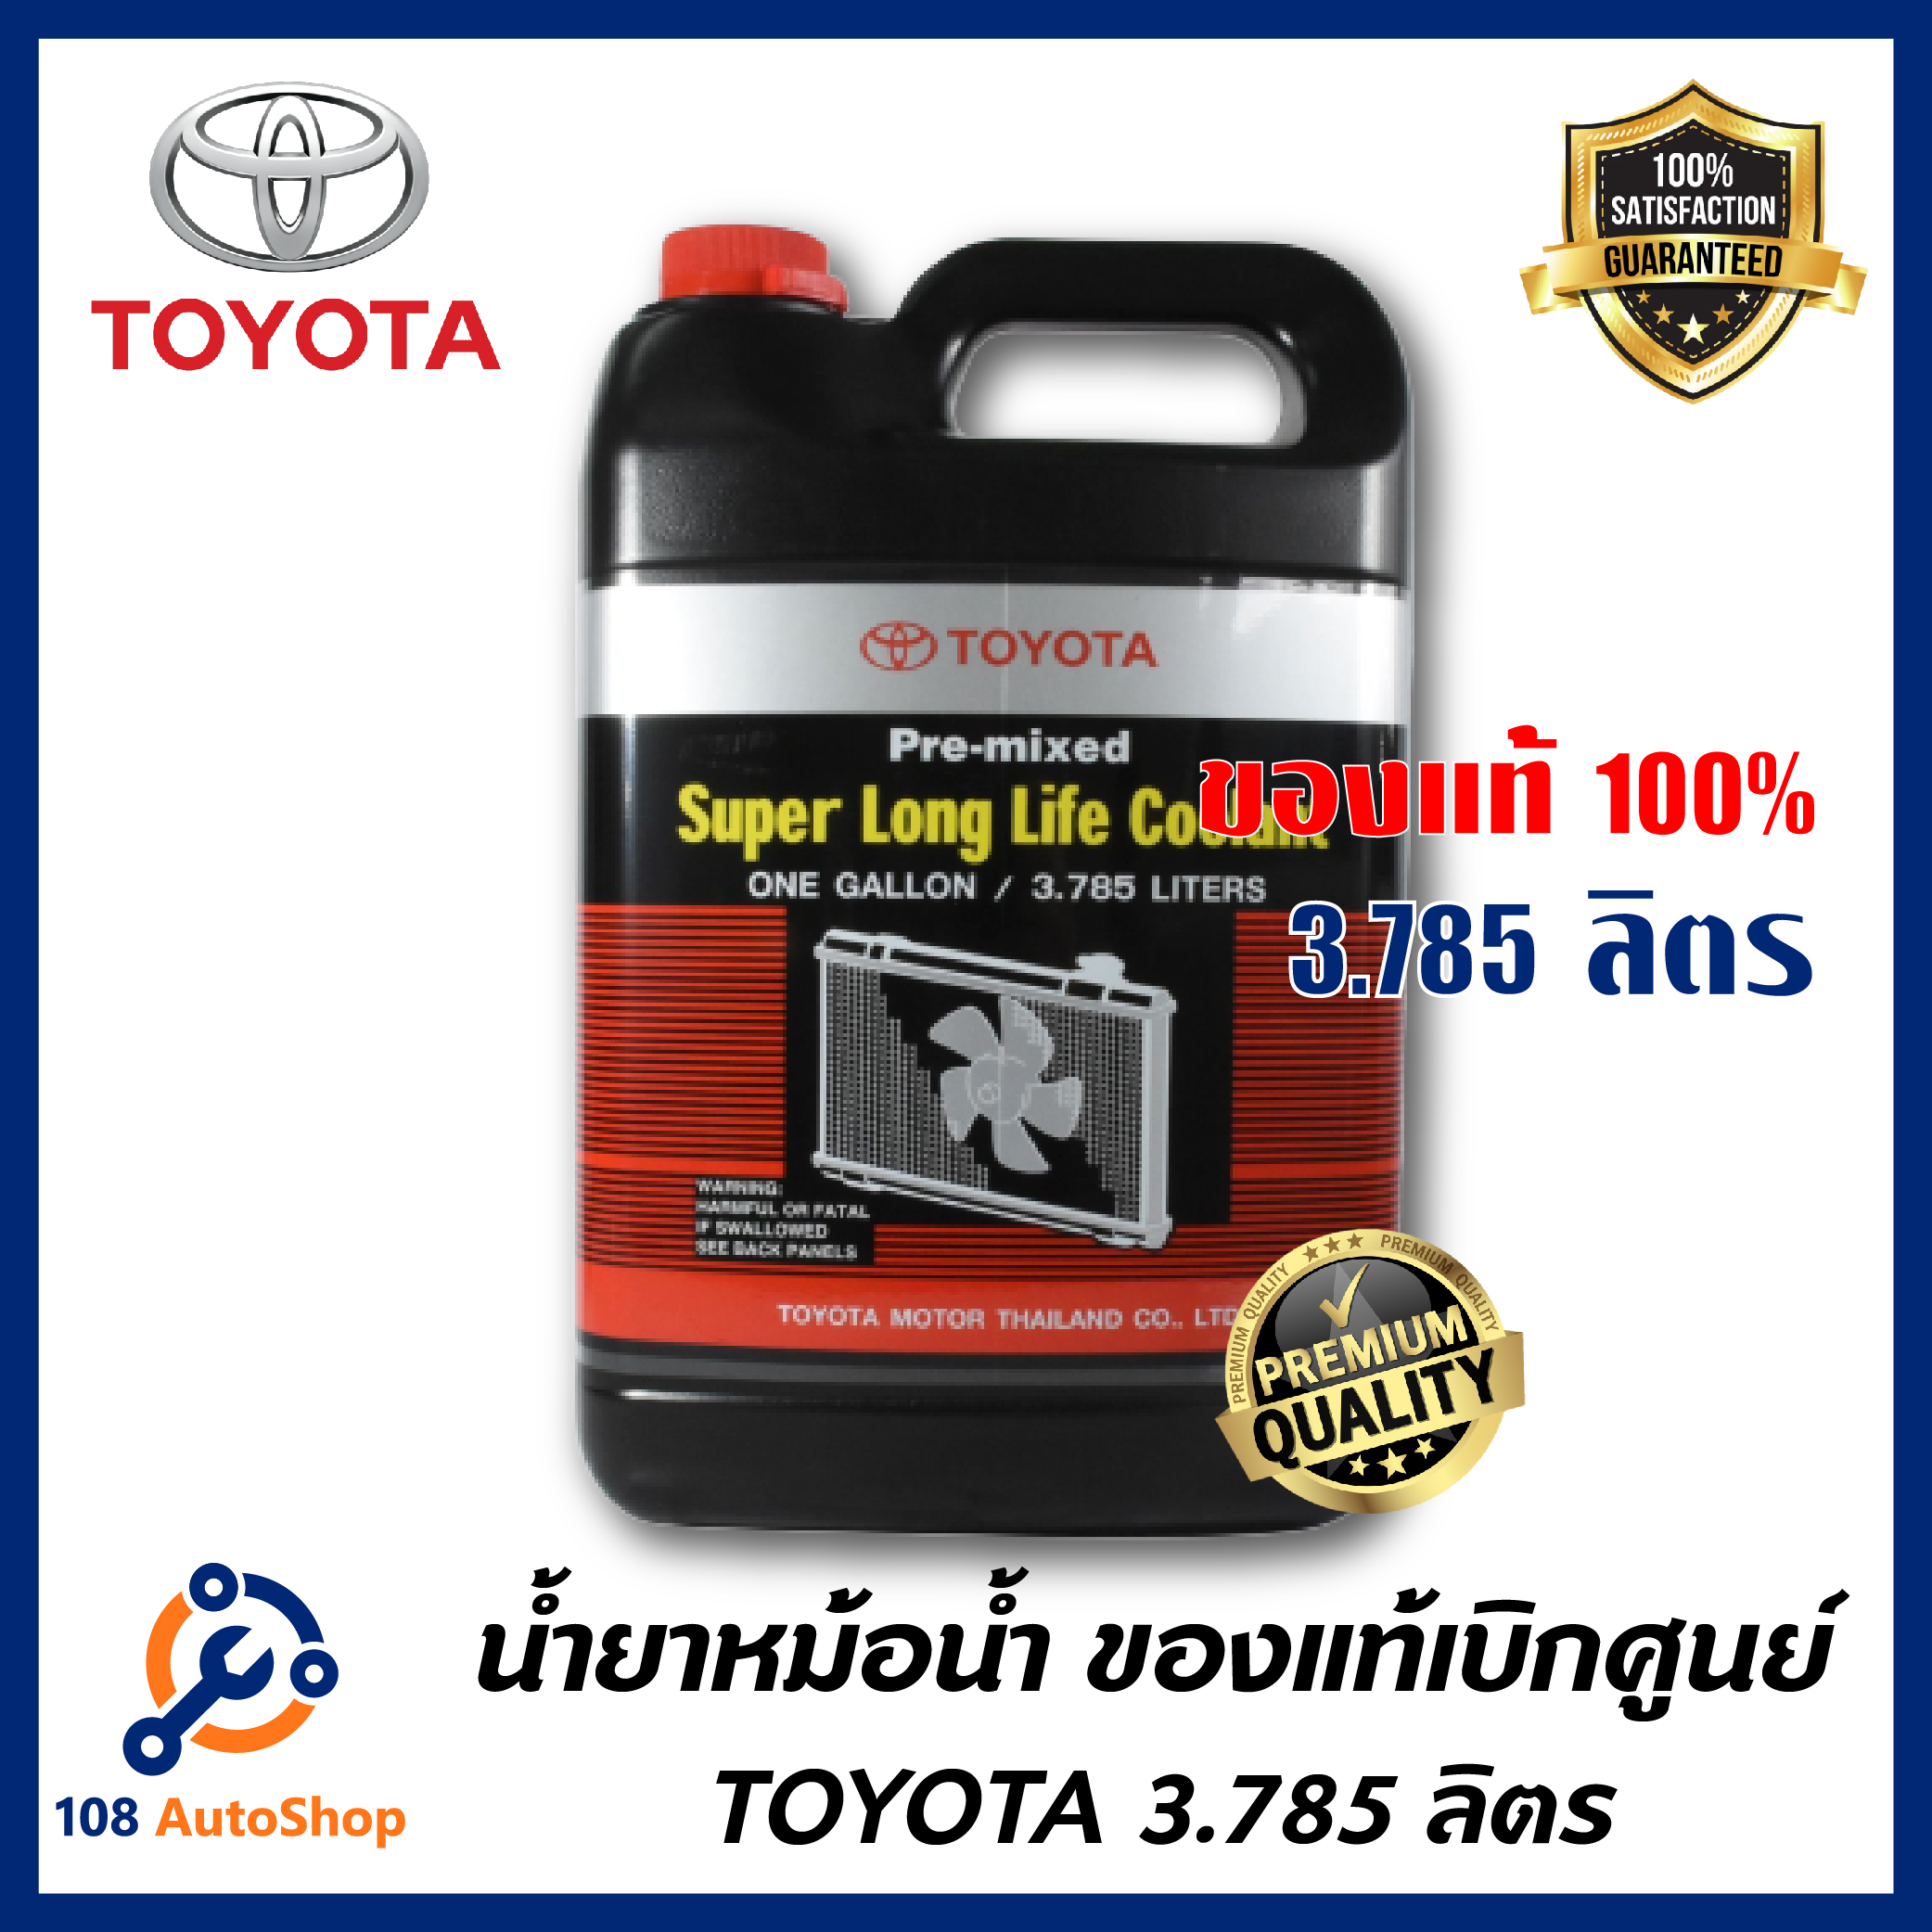 TOYOTA น้ำยาหม้อน้ำ 3.785 ลิตร น้ำสีชมพู สำหรับรถ Toyota เก๋ง กระบะ ทุกชนิด รหัส.08889-80061